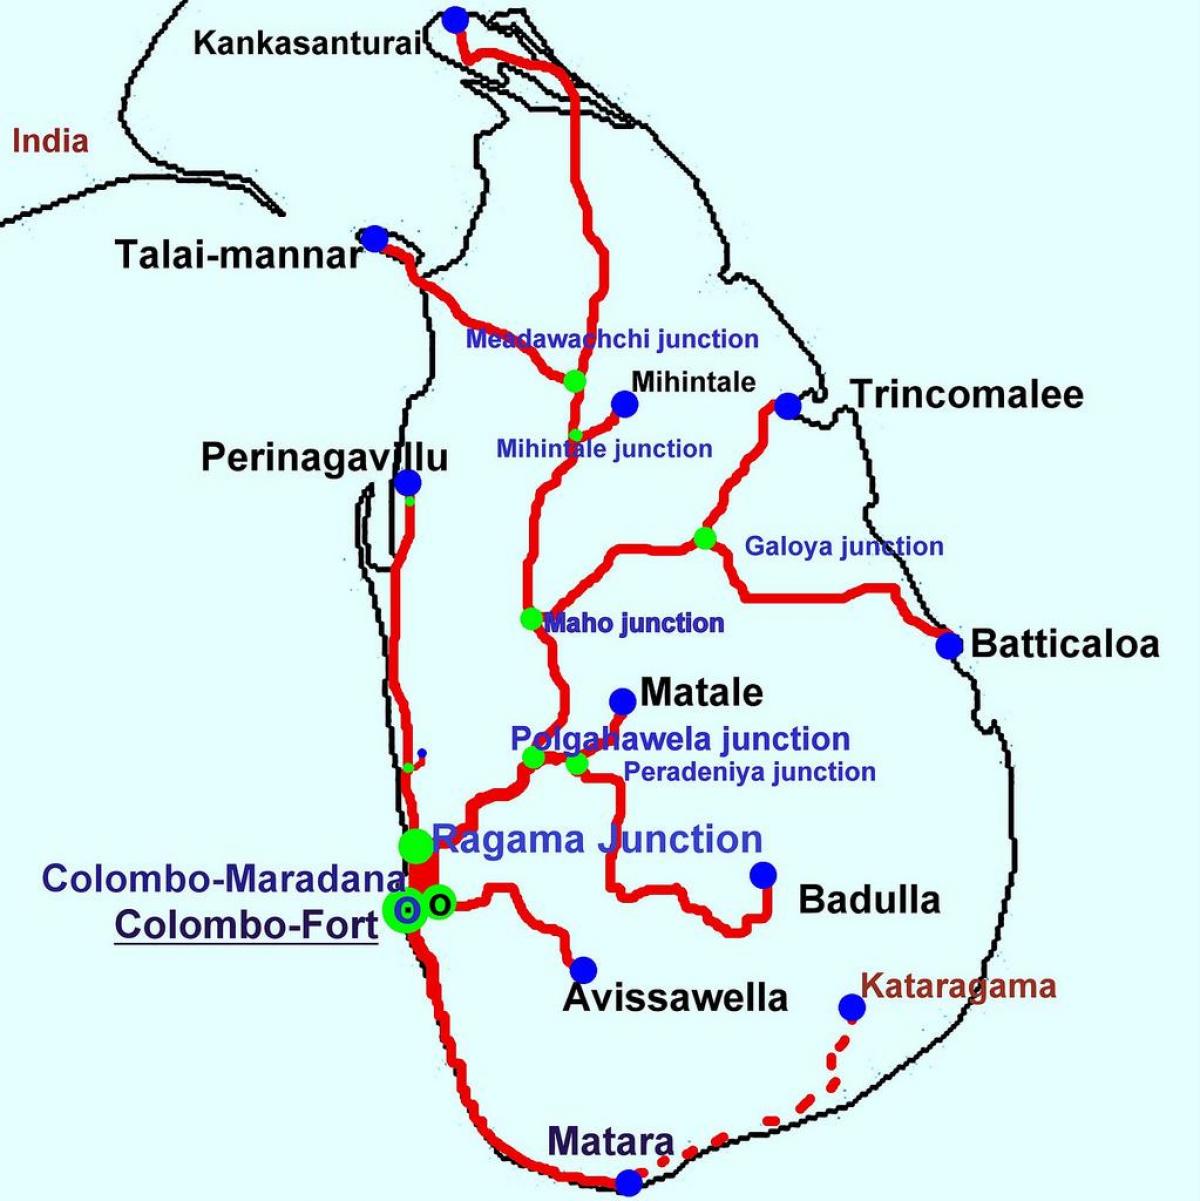 vlaki na šrilanki zemljevid